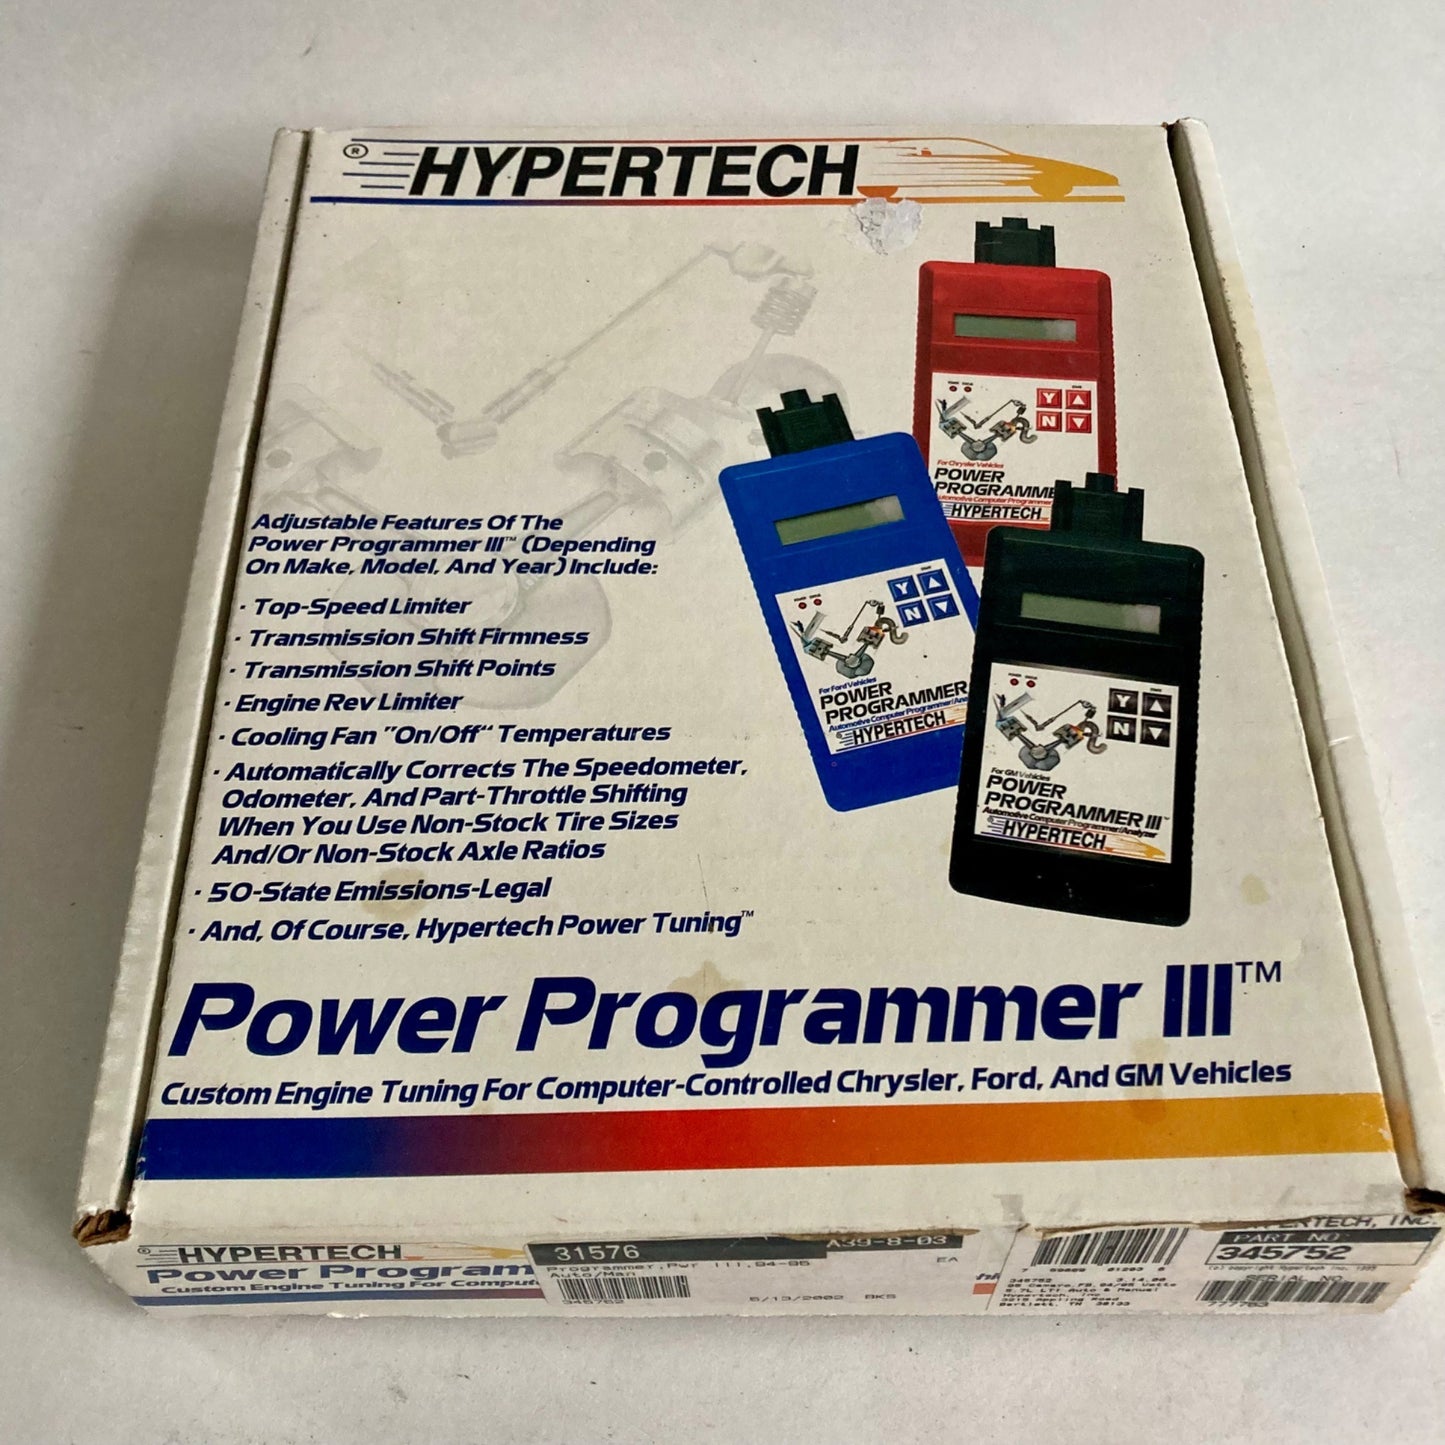 Hypertech Power Programmer III #345752 1995 Camaro 1994-95 Corvette Chevrolet GM